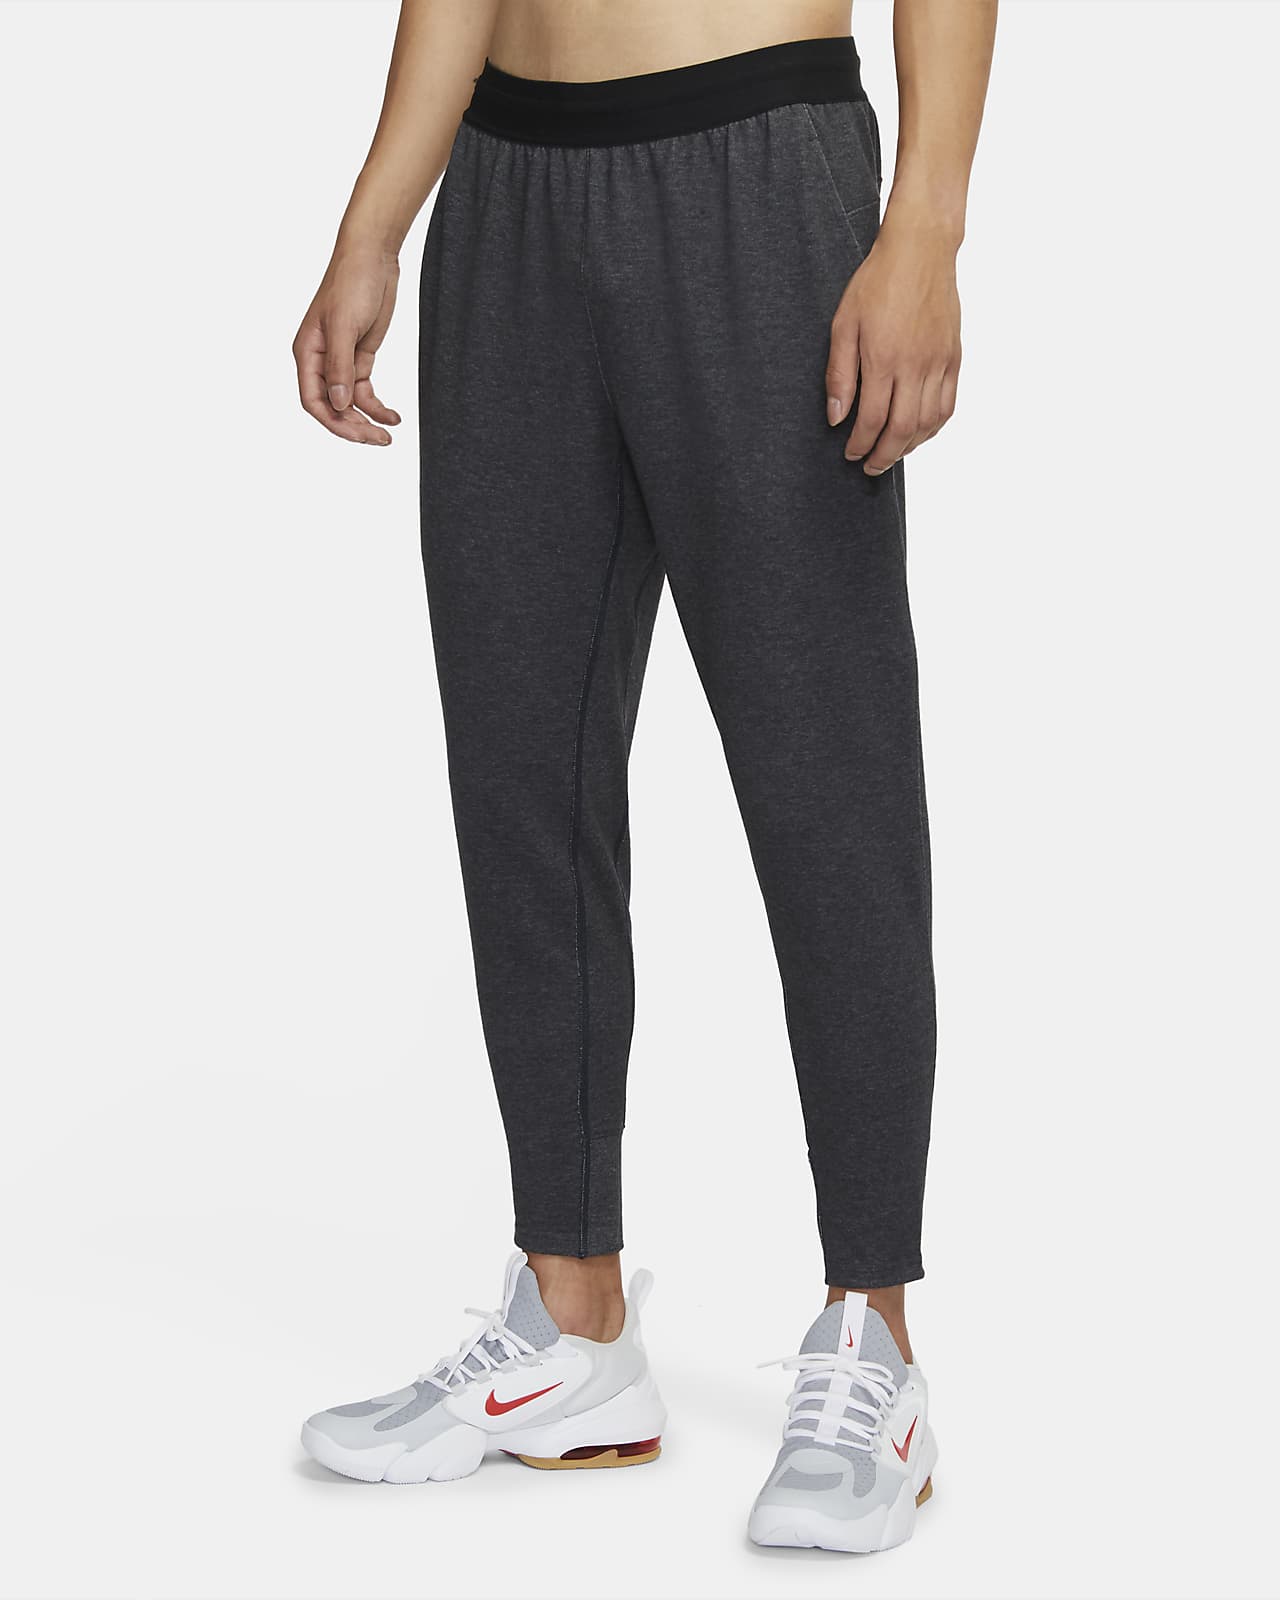 Nike Yoga Men's Trousers. Nike SG